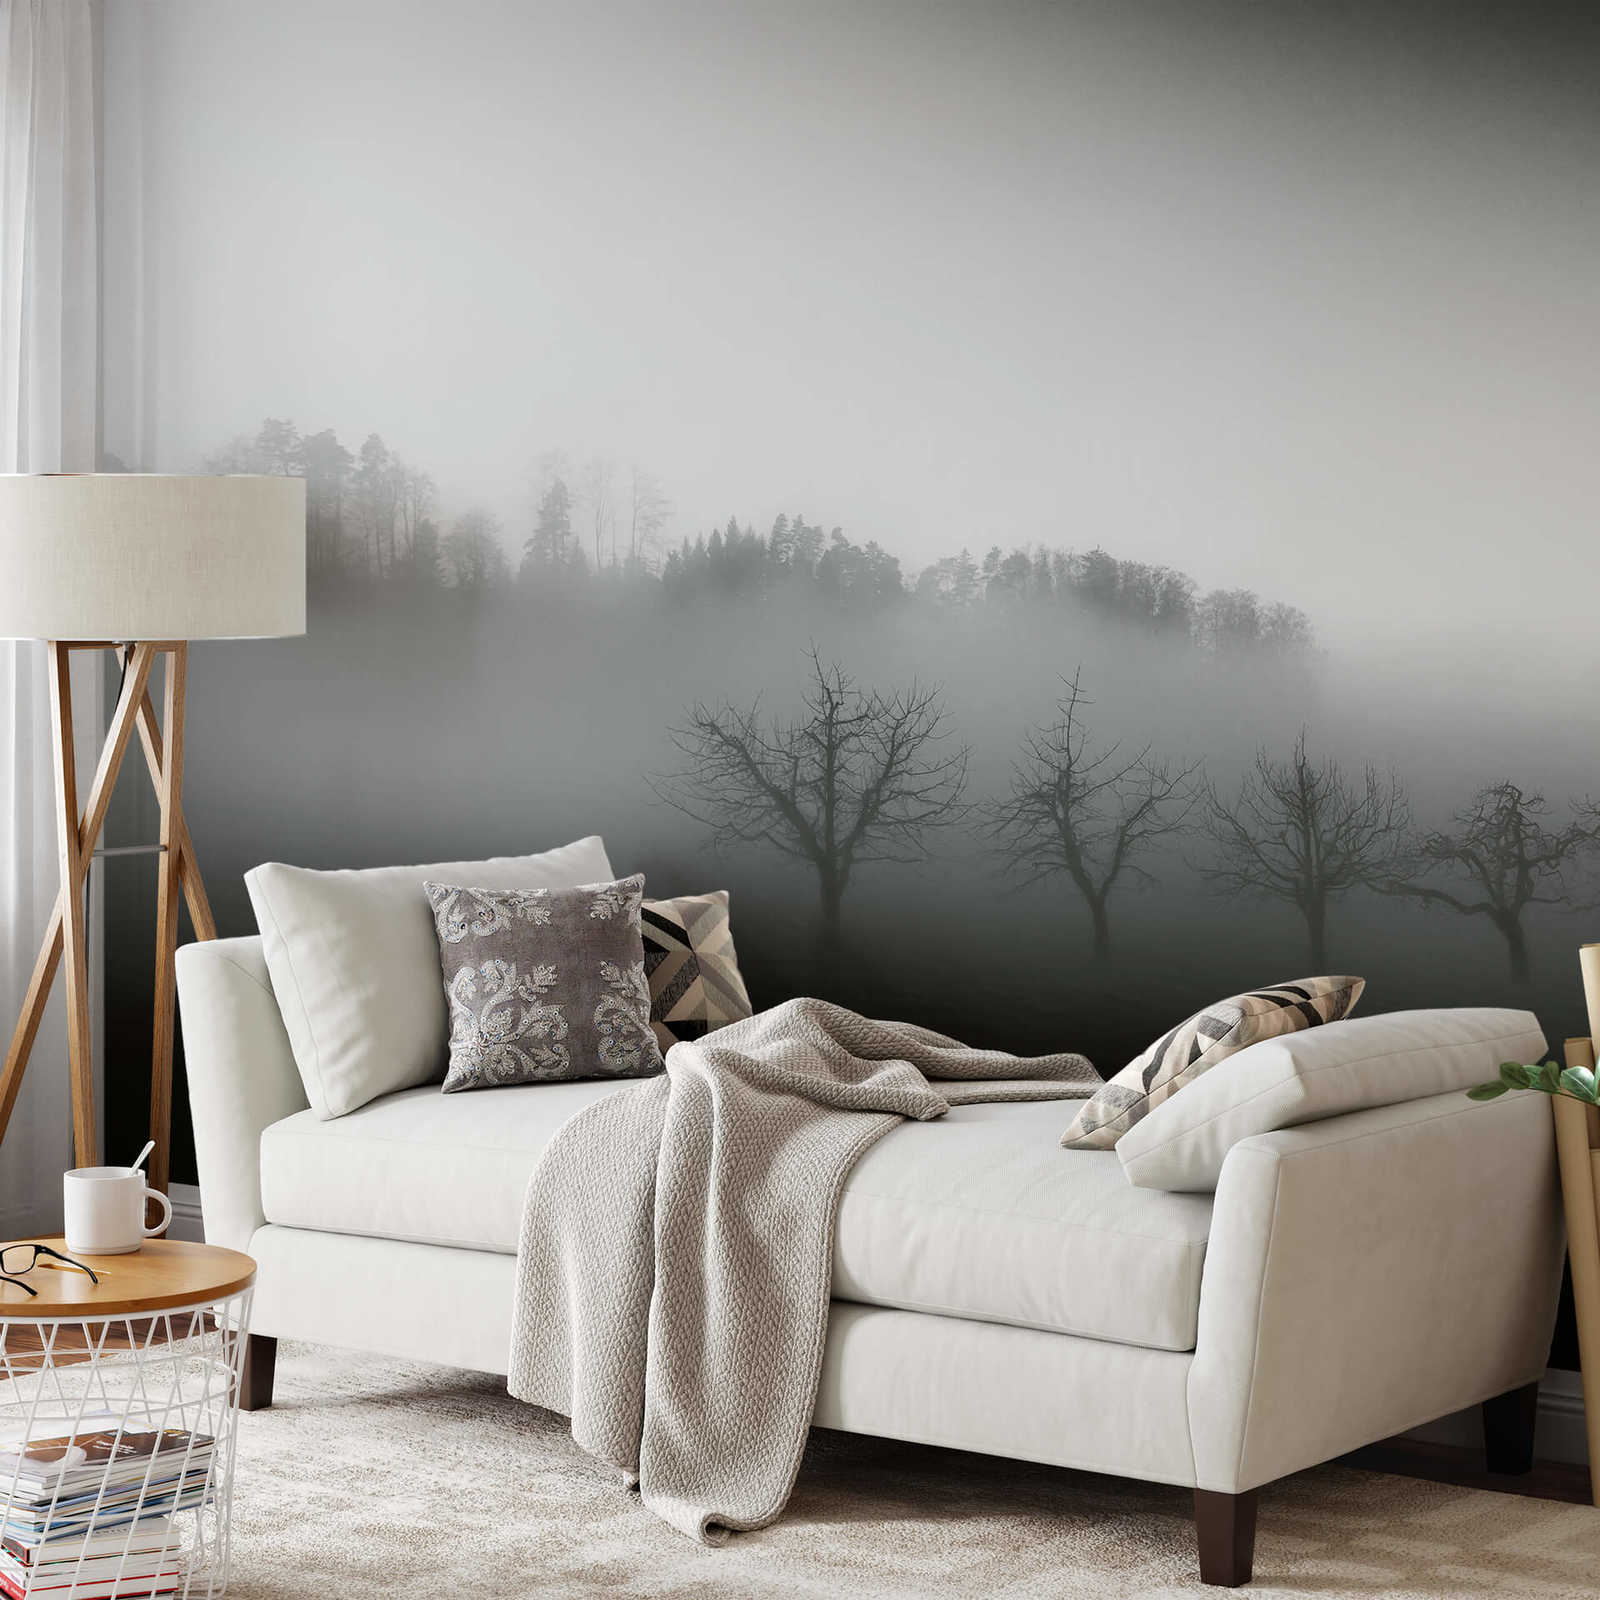             Fotomurali Paesaggio con nebbia - Nero, bianco, grigio
        